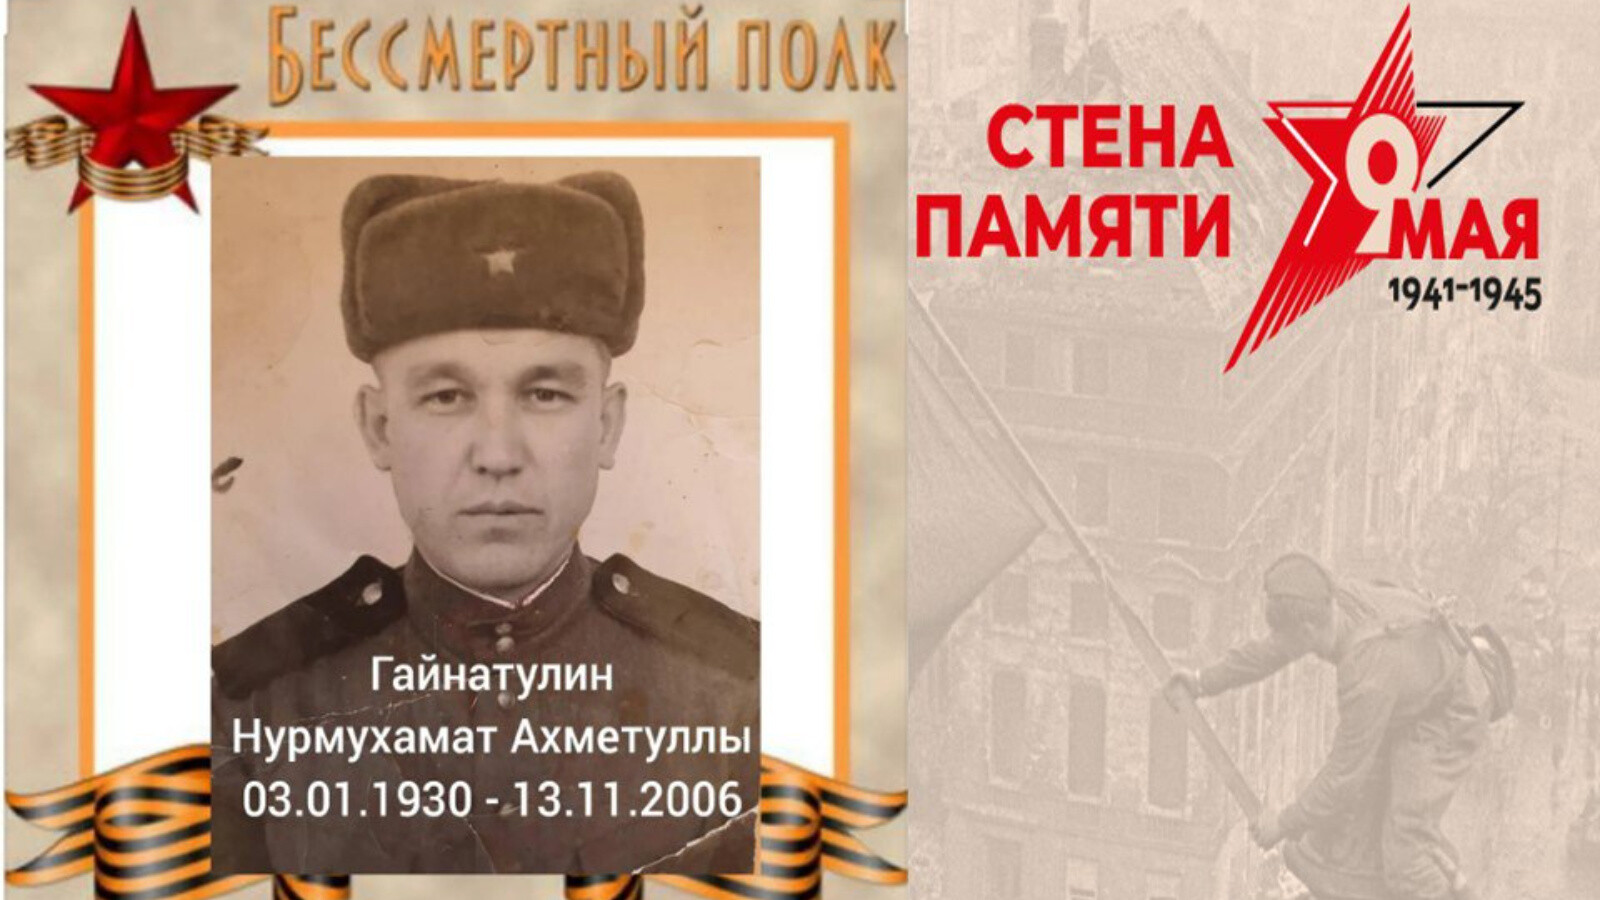 Госкомитет РТ по тарифам запустил акцию «Стена памяти героев Великой Отечественной войны»